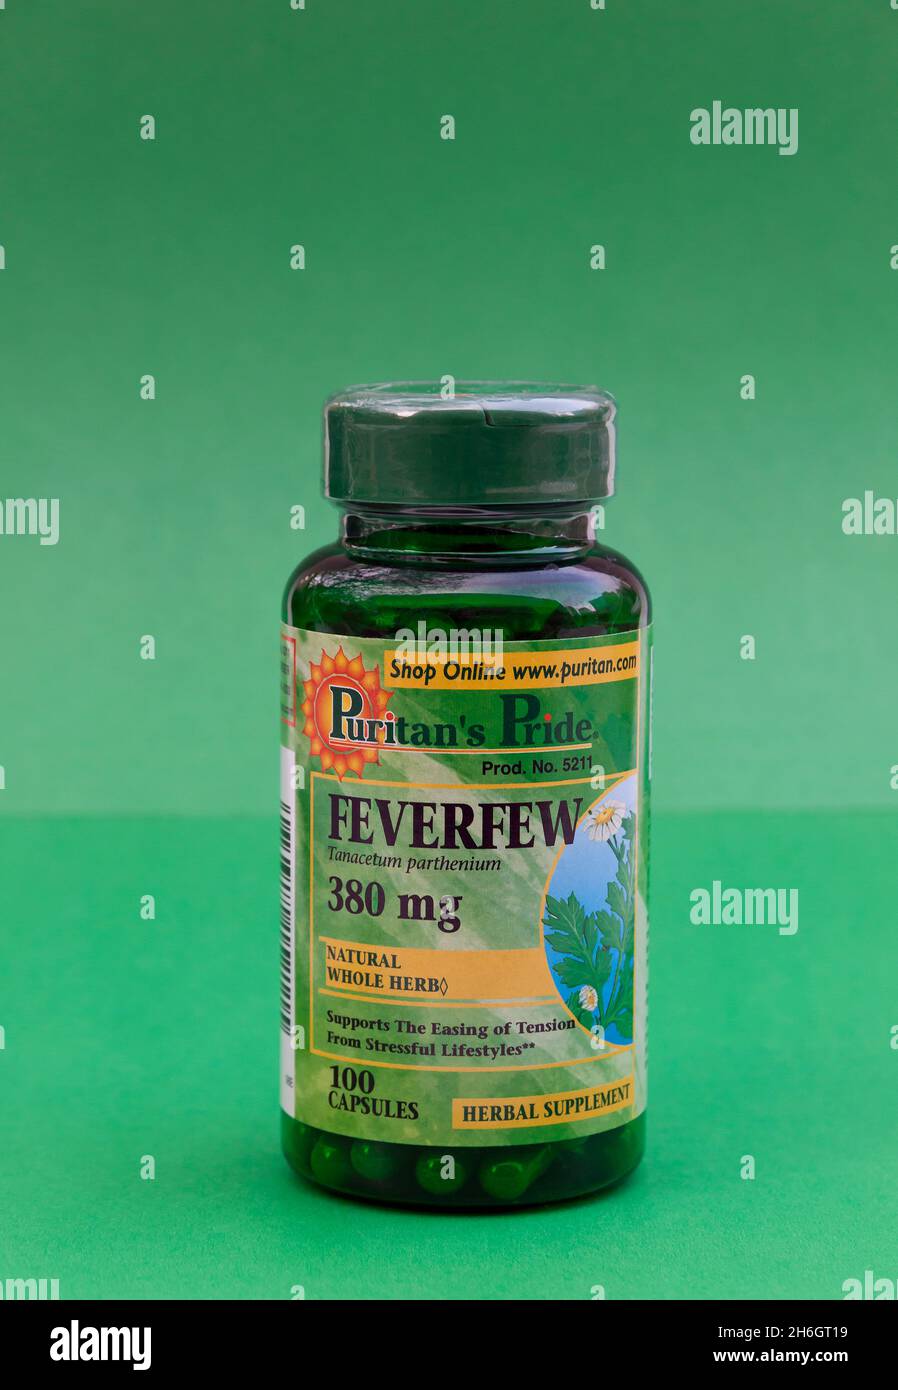 Feverfew suplemento herbario utilizado para las migrañas, tensión, inflamación, y picazón. Foto de stock